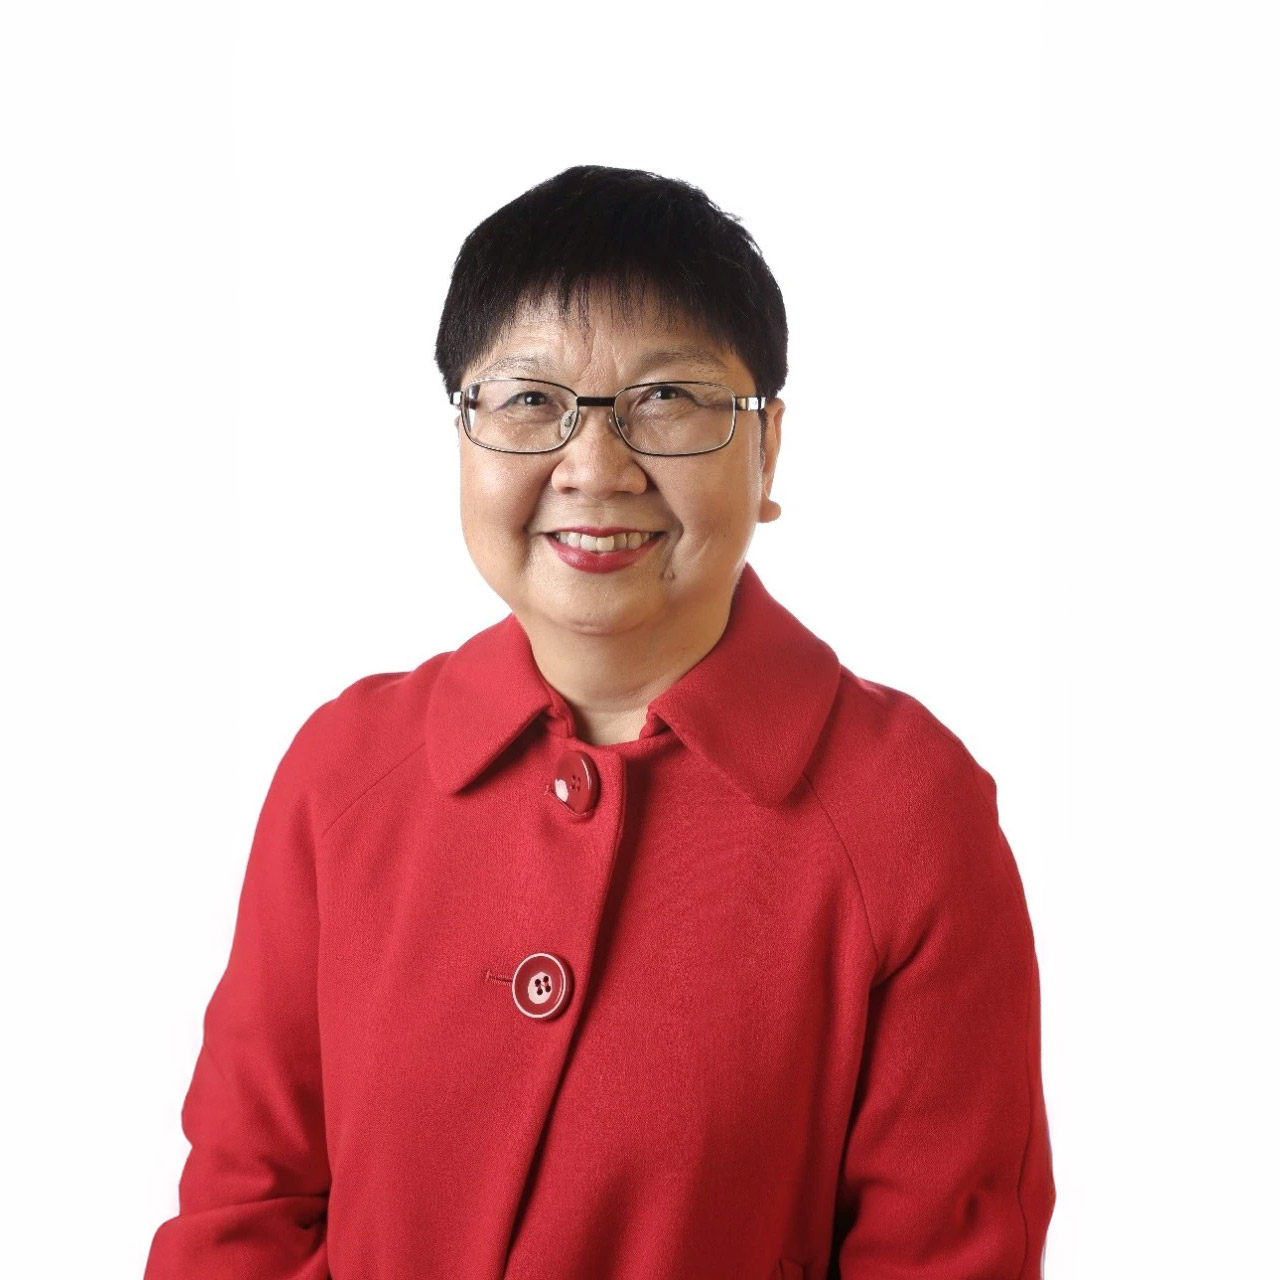 Professor Wai Fong Chua AM